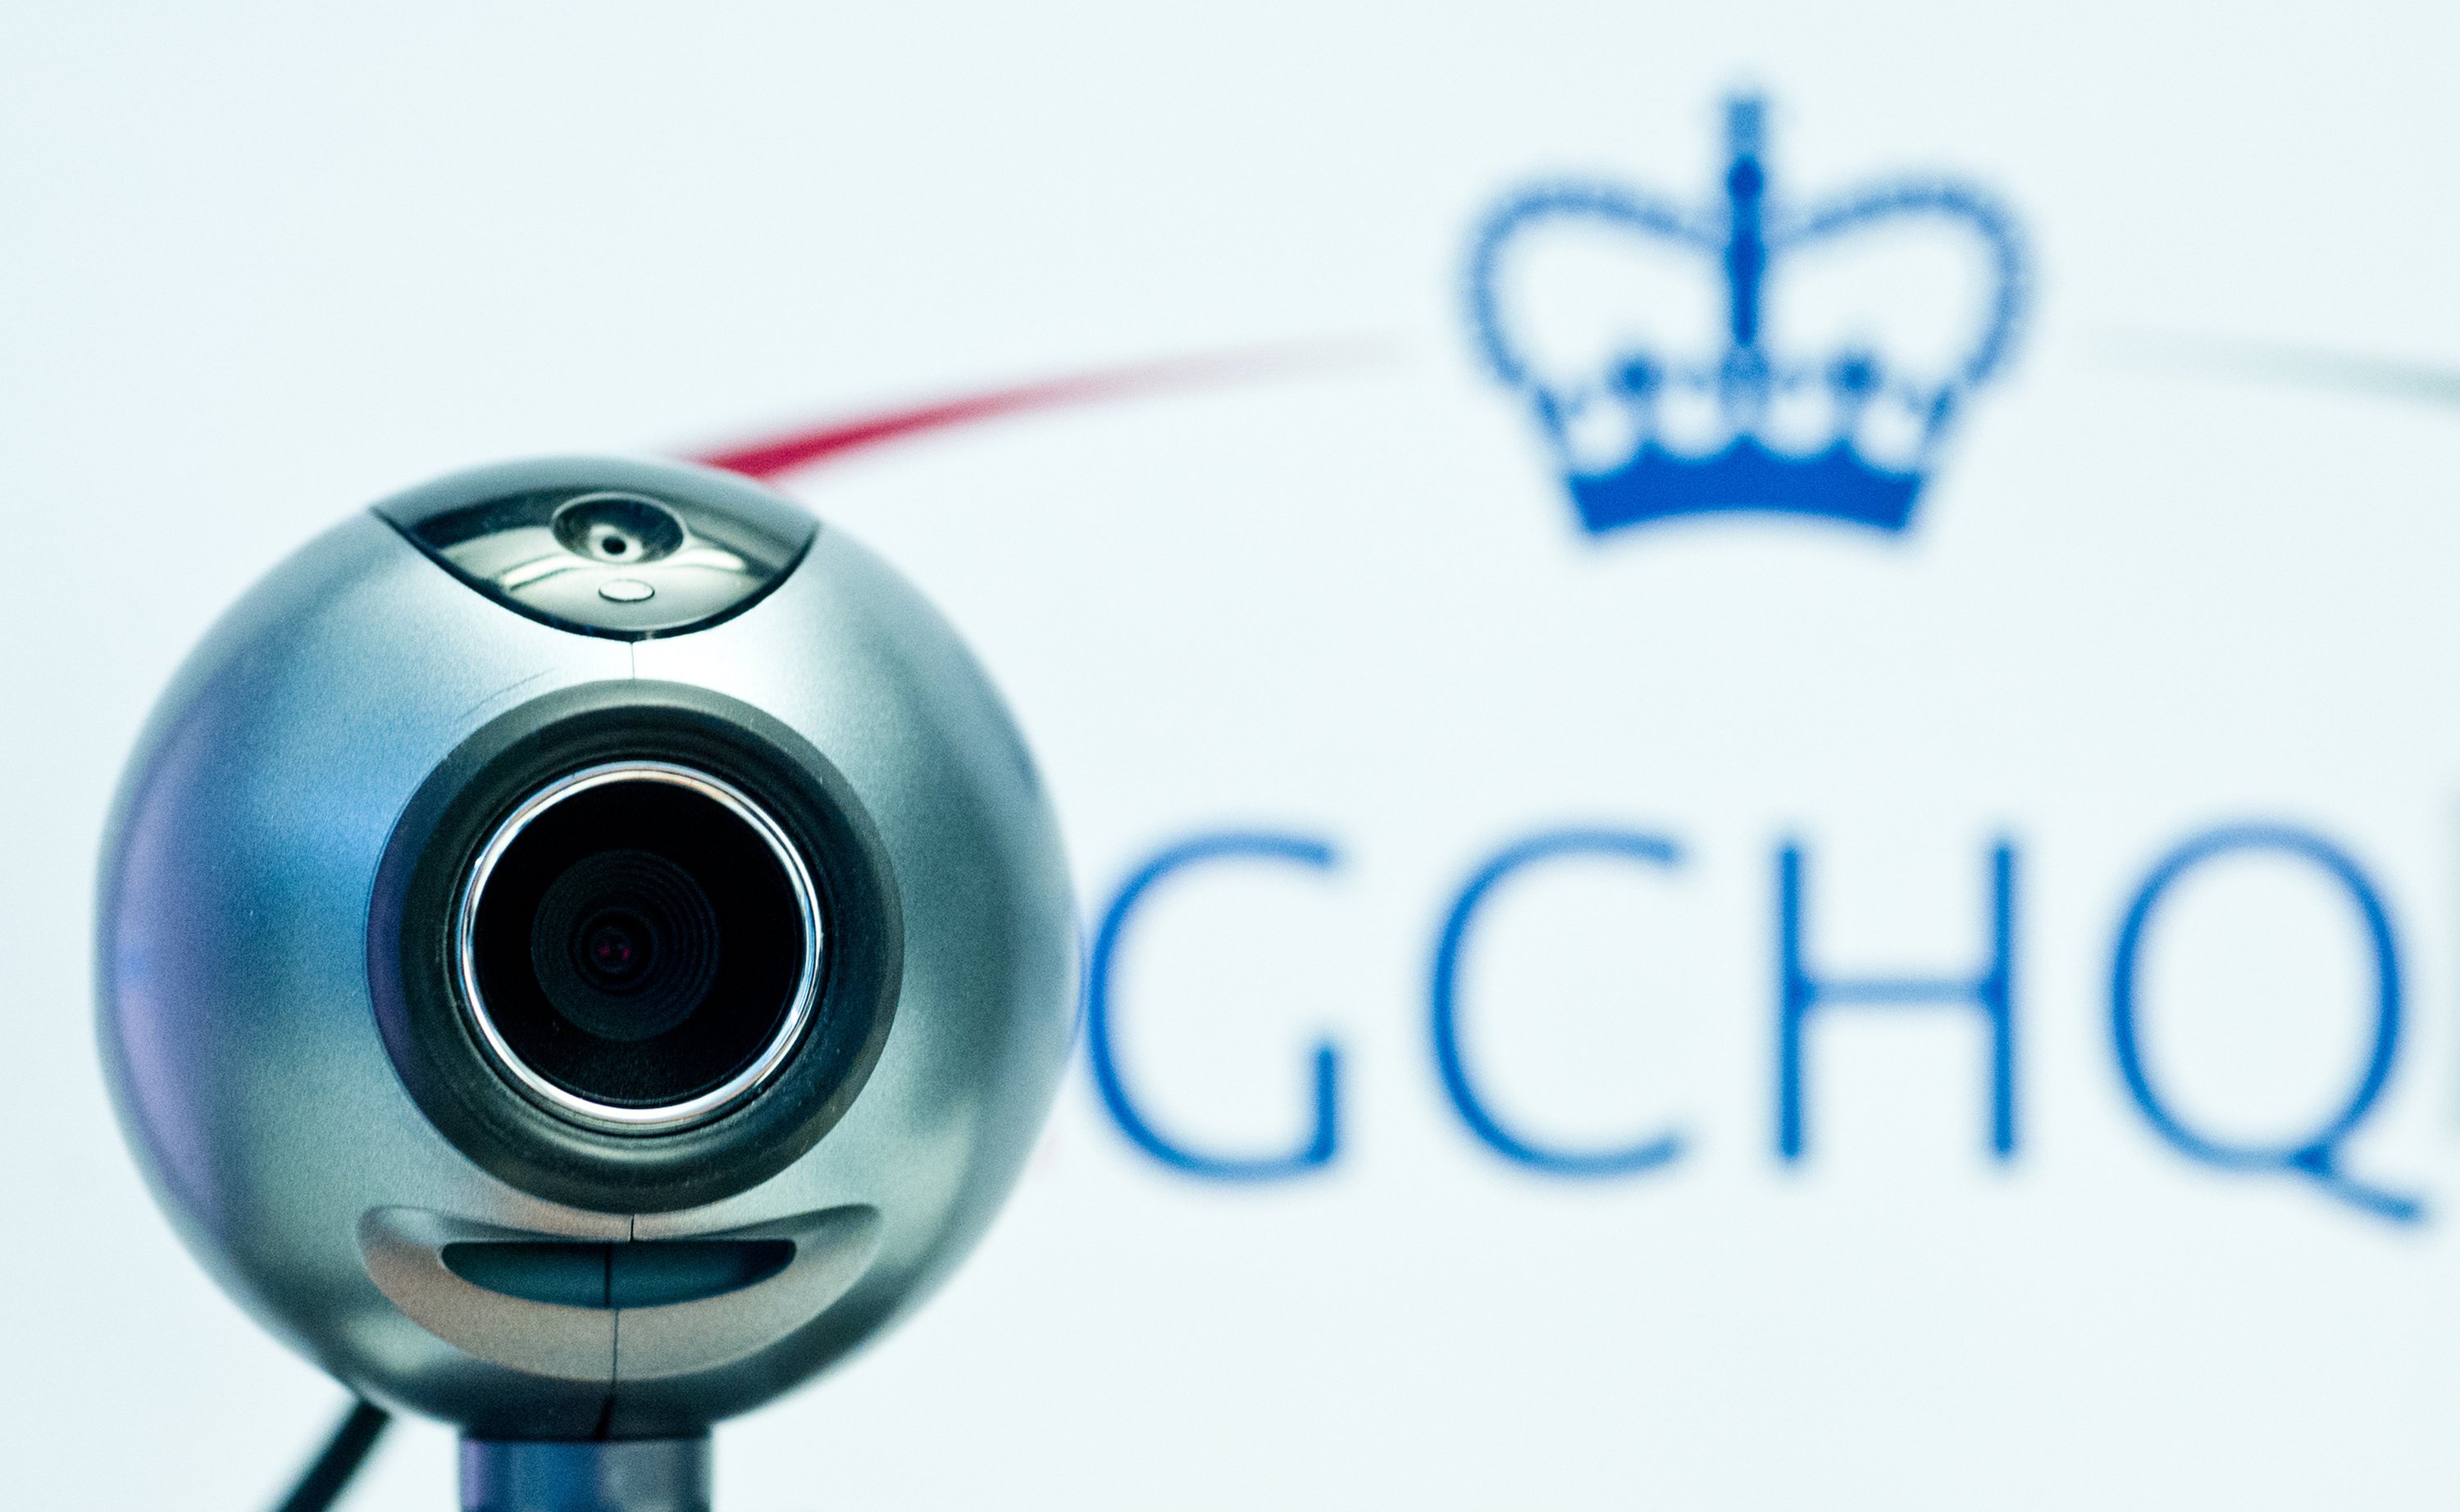 Eine Webcam vor dem Logo des britischen Geheimdienstes Government Communications Headquarters (GCHQ). Die britische Regierung hat zugegeben, dass ihr Abhördienst GCHQ im großen Stil den Internetverkehr wie etwa die Google-Suchen oder die Facebook-Aktivitäten britischer Bürger anzapft. 